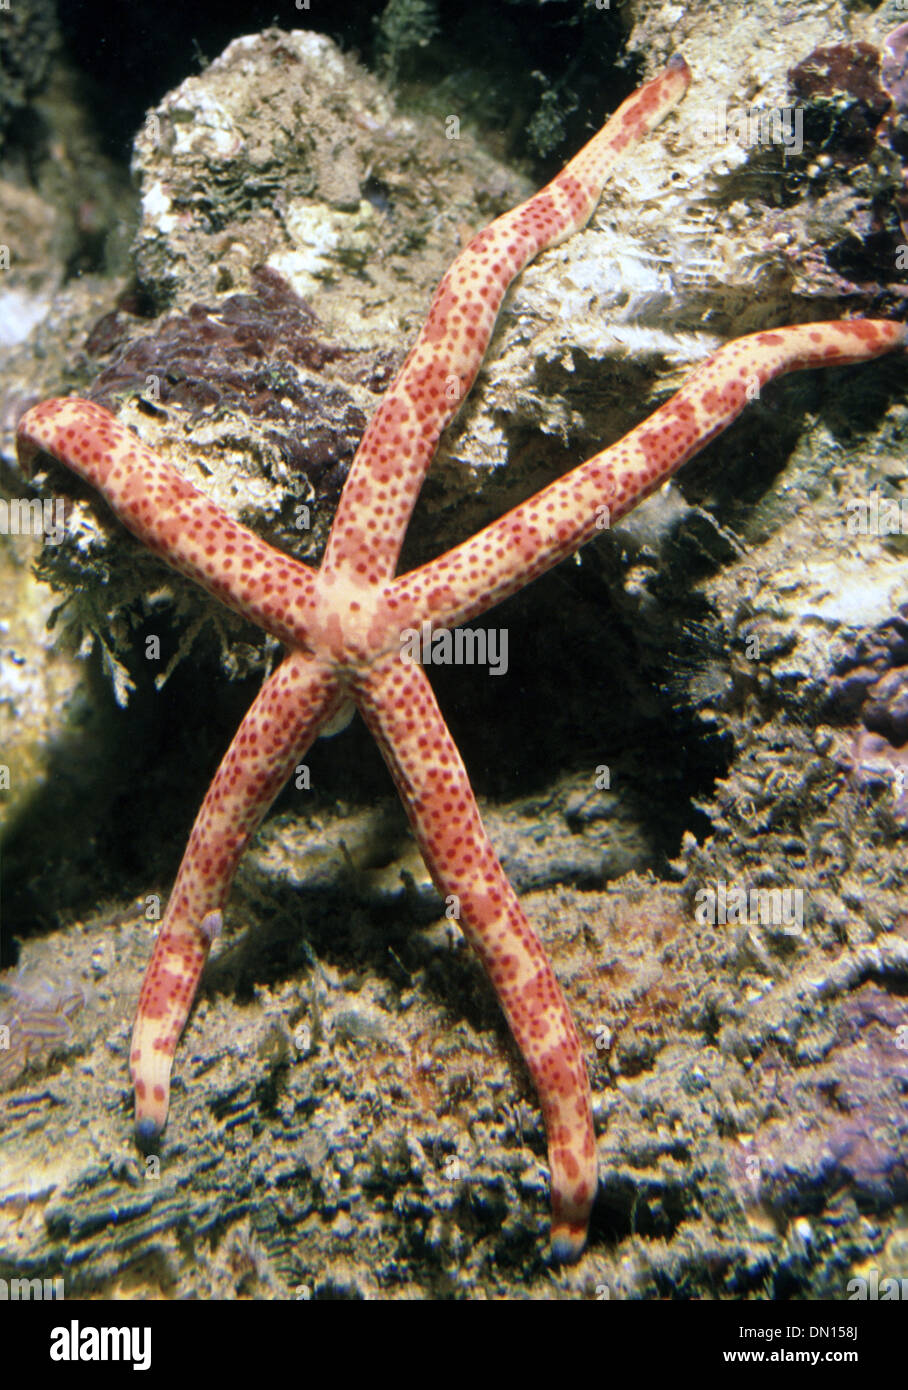 Starfish (Linckia multifora) in aquarium Stock Photo